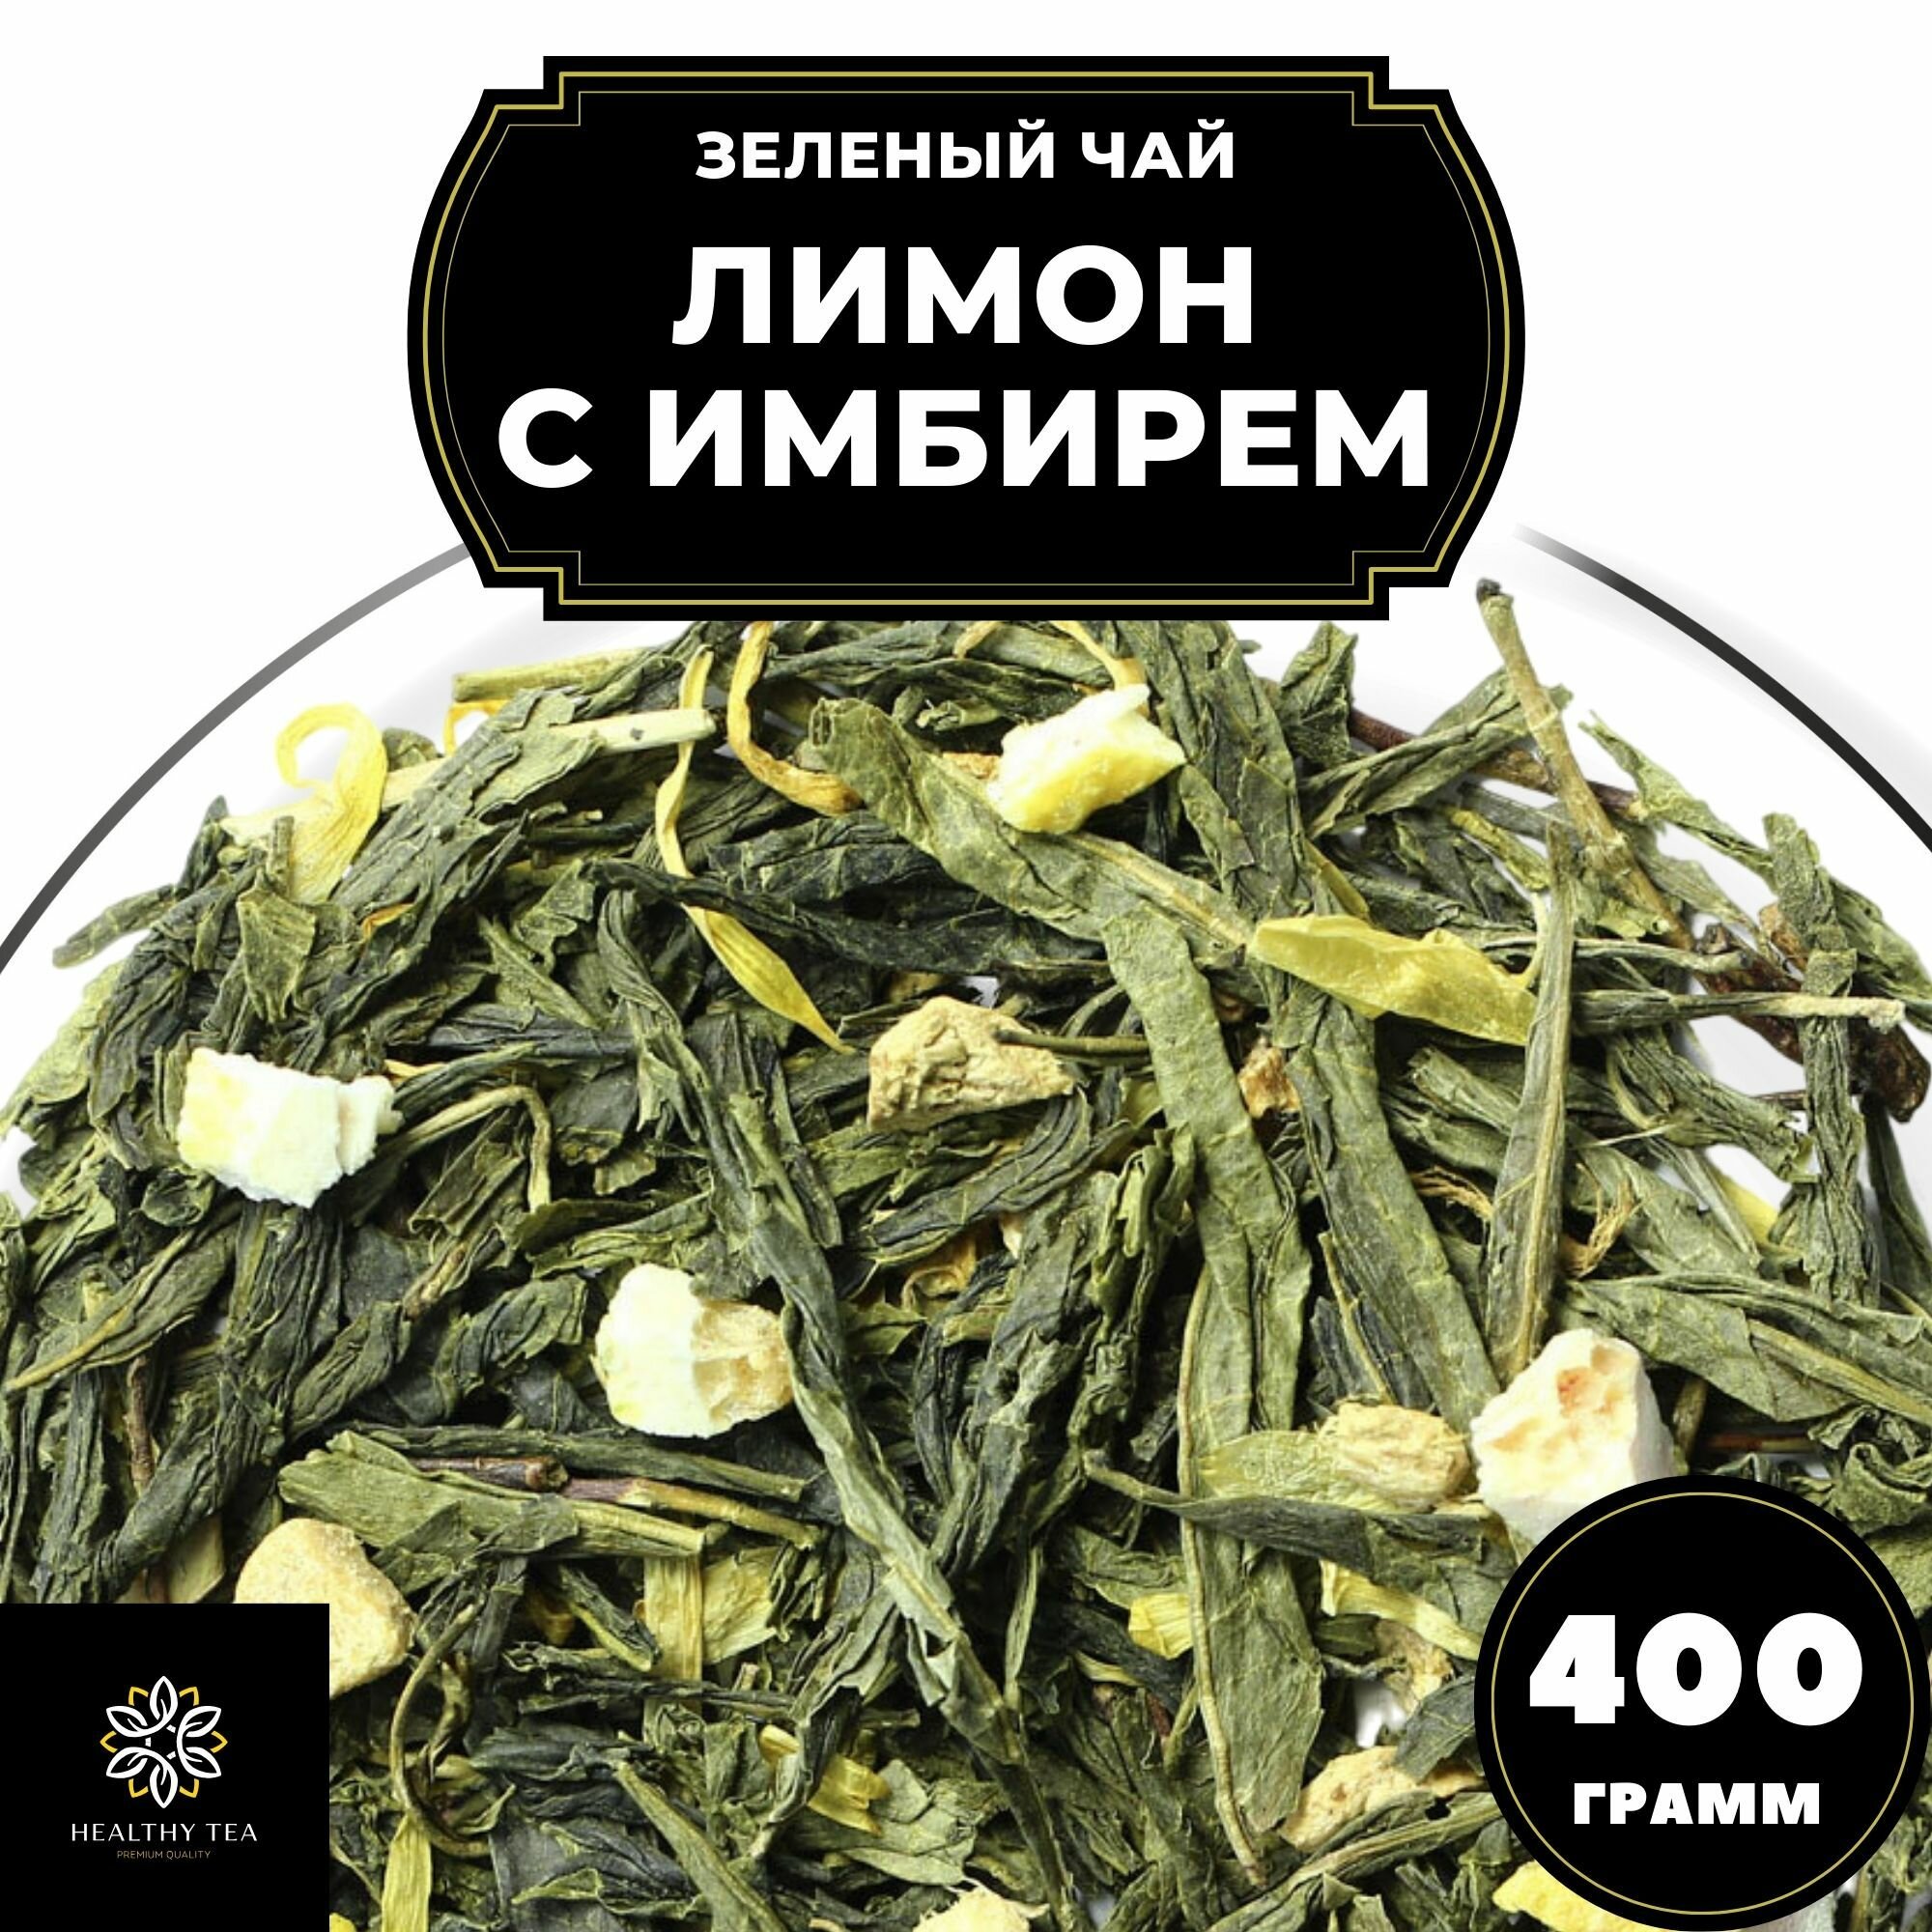 Китайский Зеленый чай с имбирем, лимоном и календулой Лимон с имбирем Полезный чай / HEALTHY TEA, 400 г